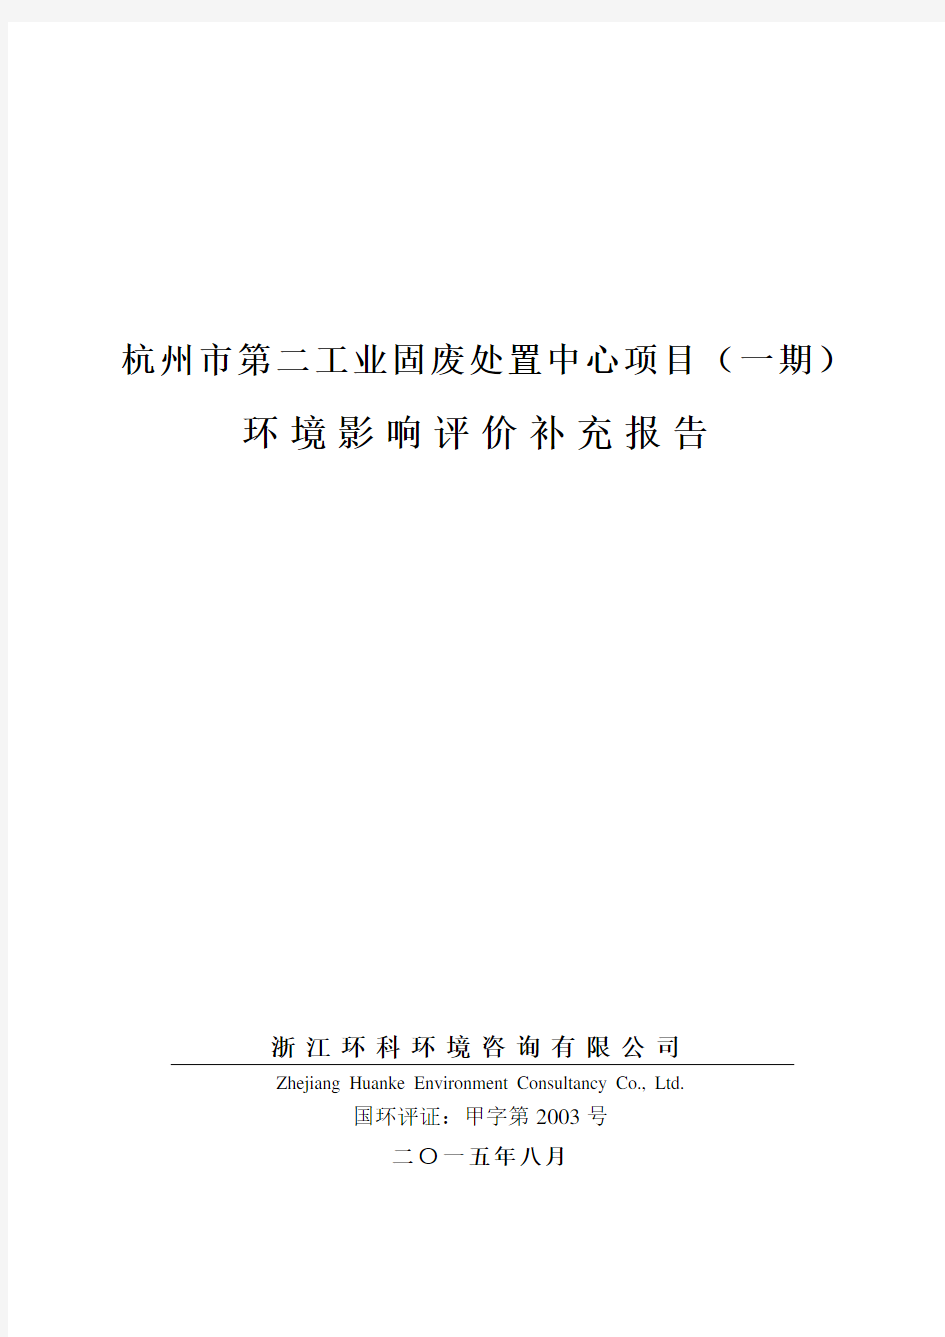 杭州市第二工业固废处置中心项目(一期)环境影响评价补充报告